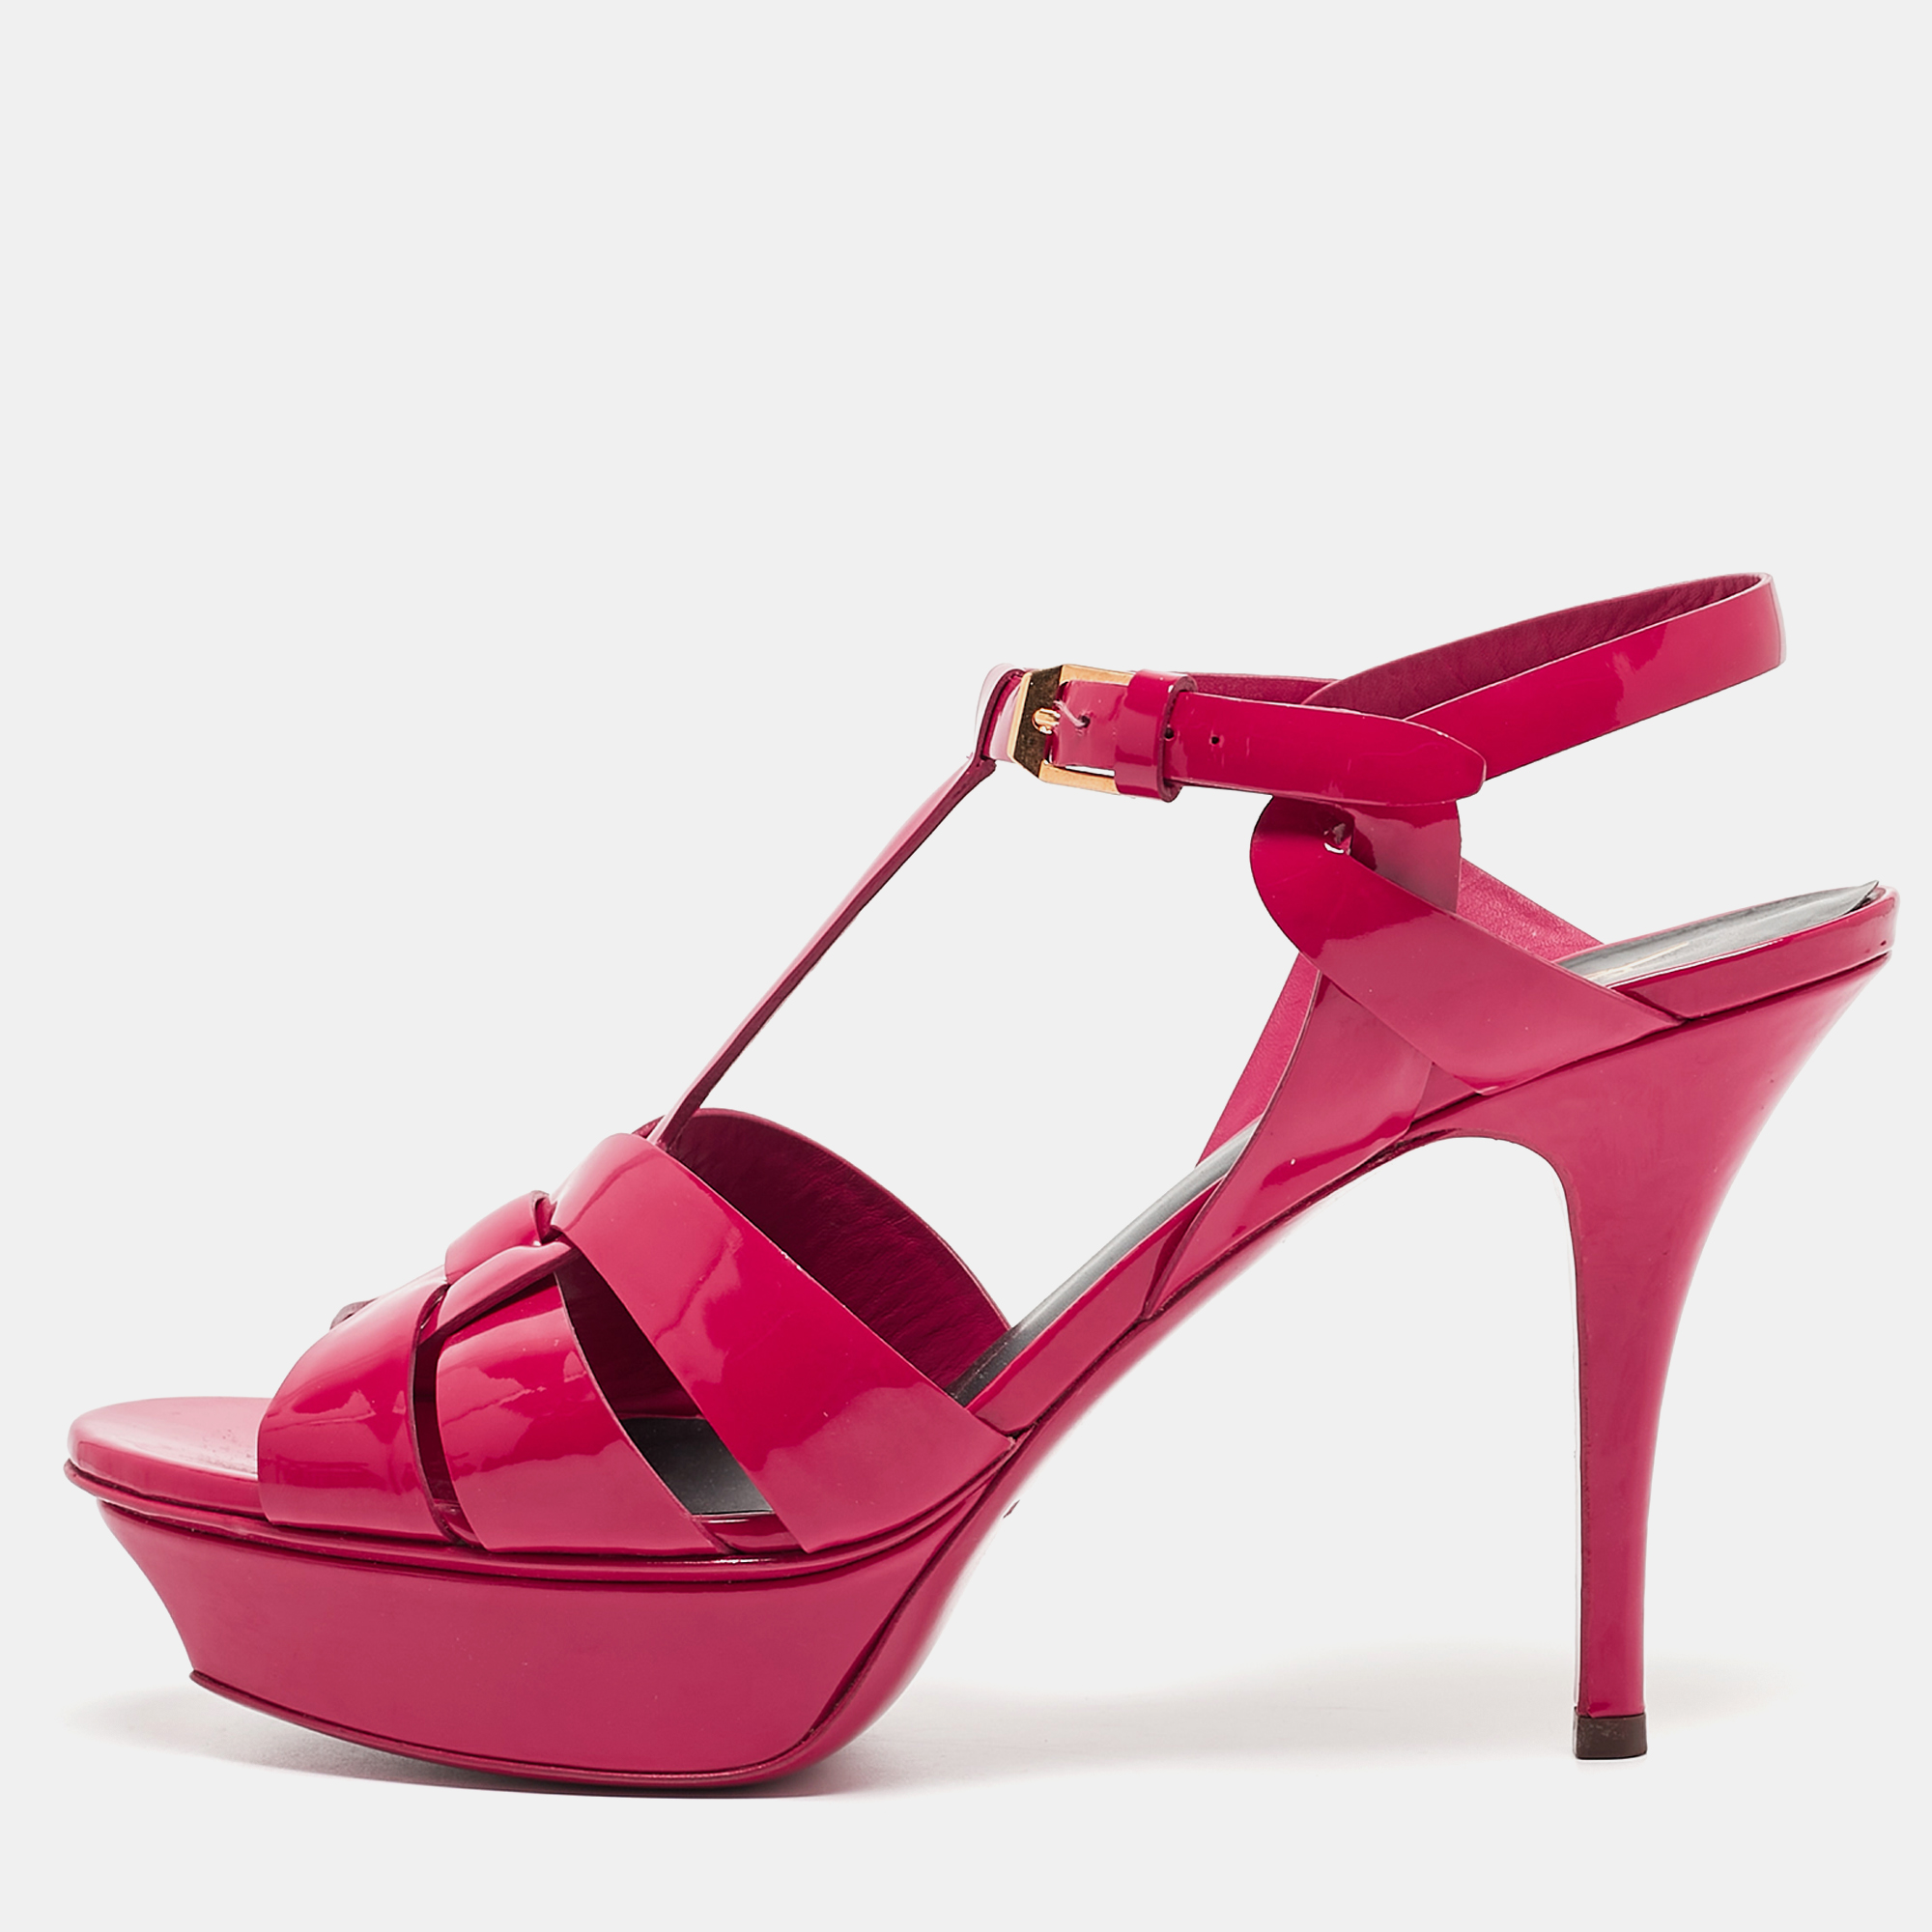 Saint laurent paris saint laurent pink patent leather tribute sandals size 39.5